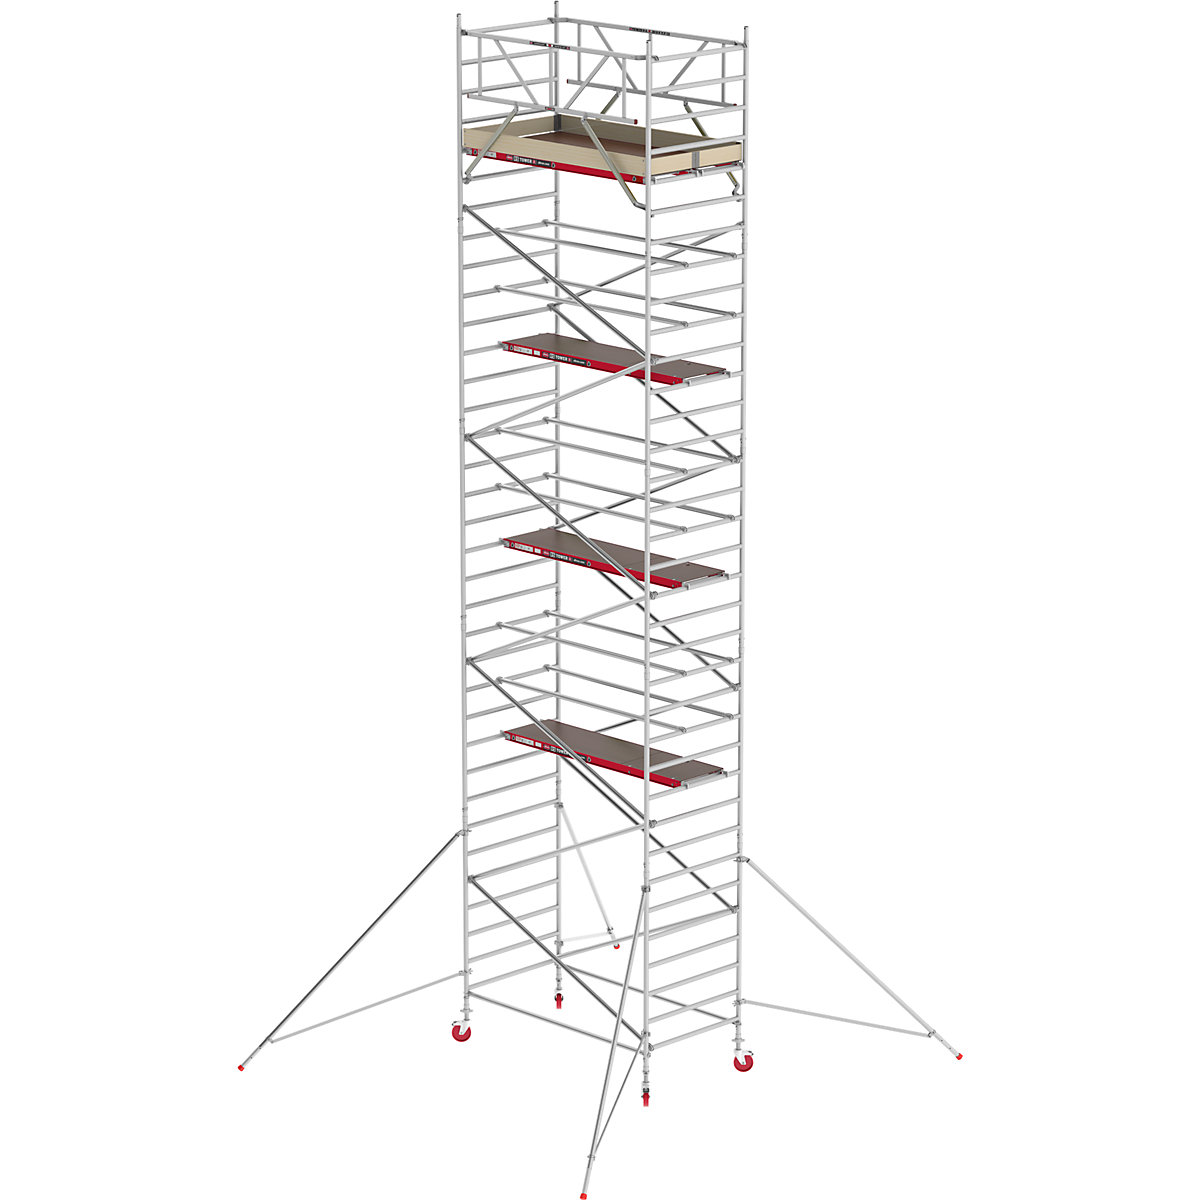 Schelă mobilă RS TOWER 42 lată – Altrex, platformă din lemn, lungime 2,45 m, înălțime de lucru 11,20 m-9